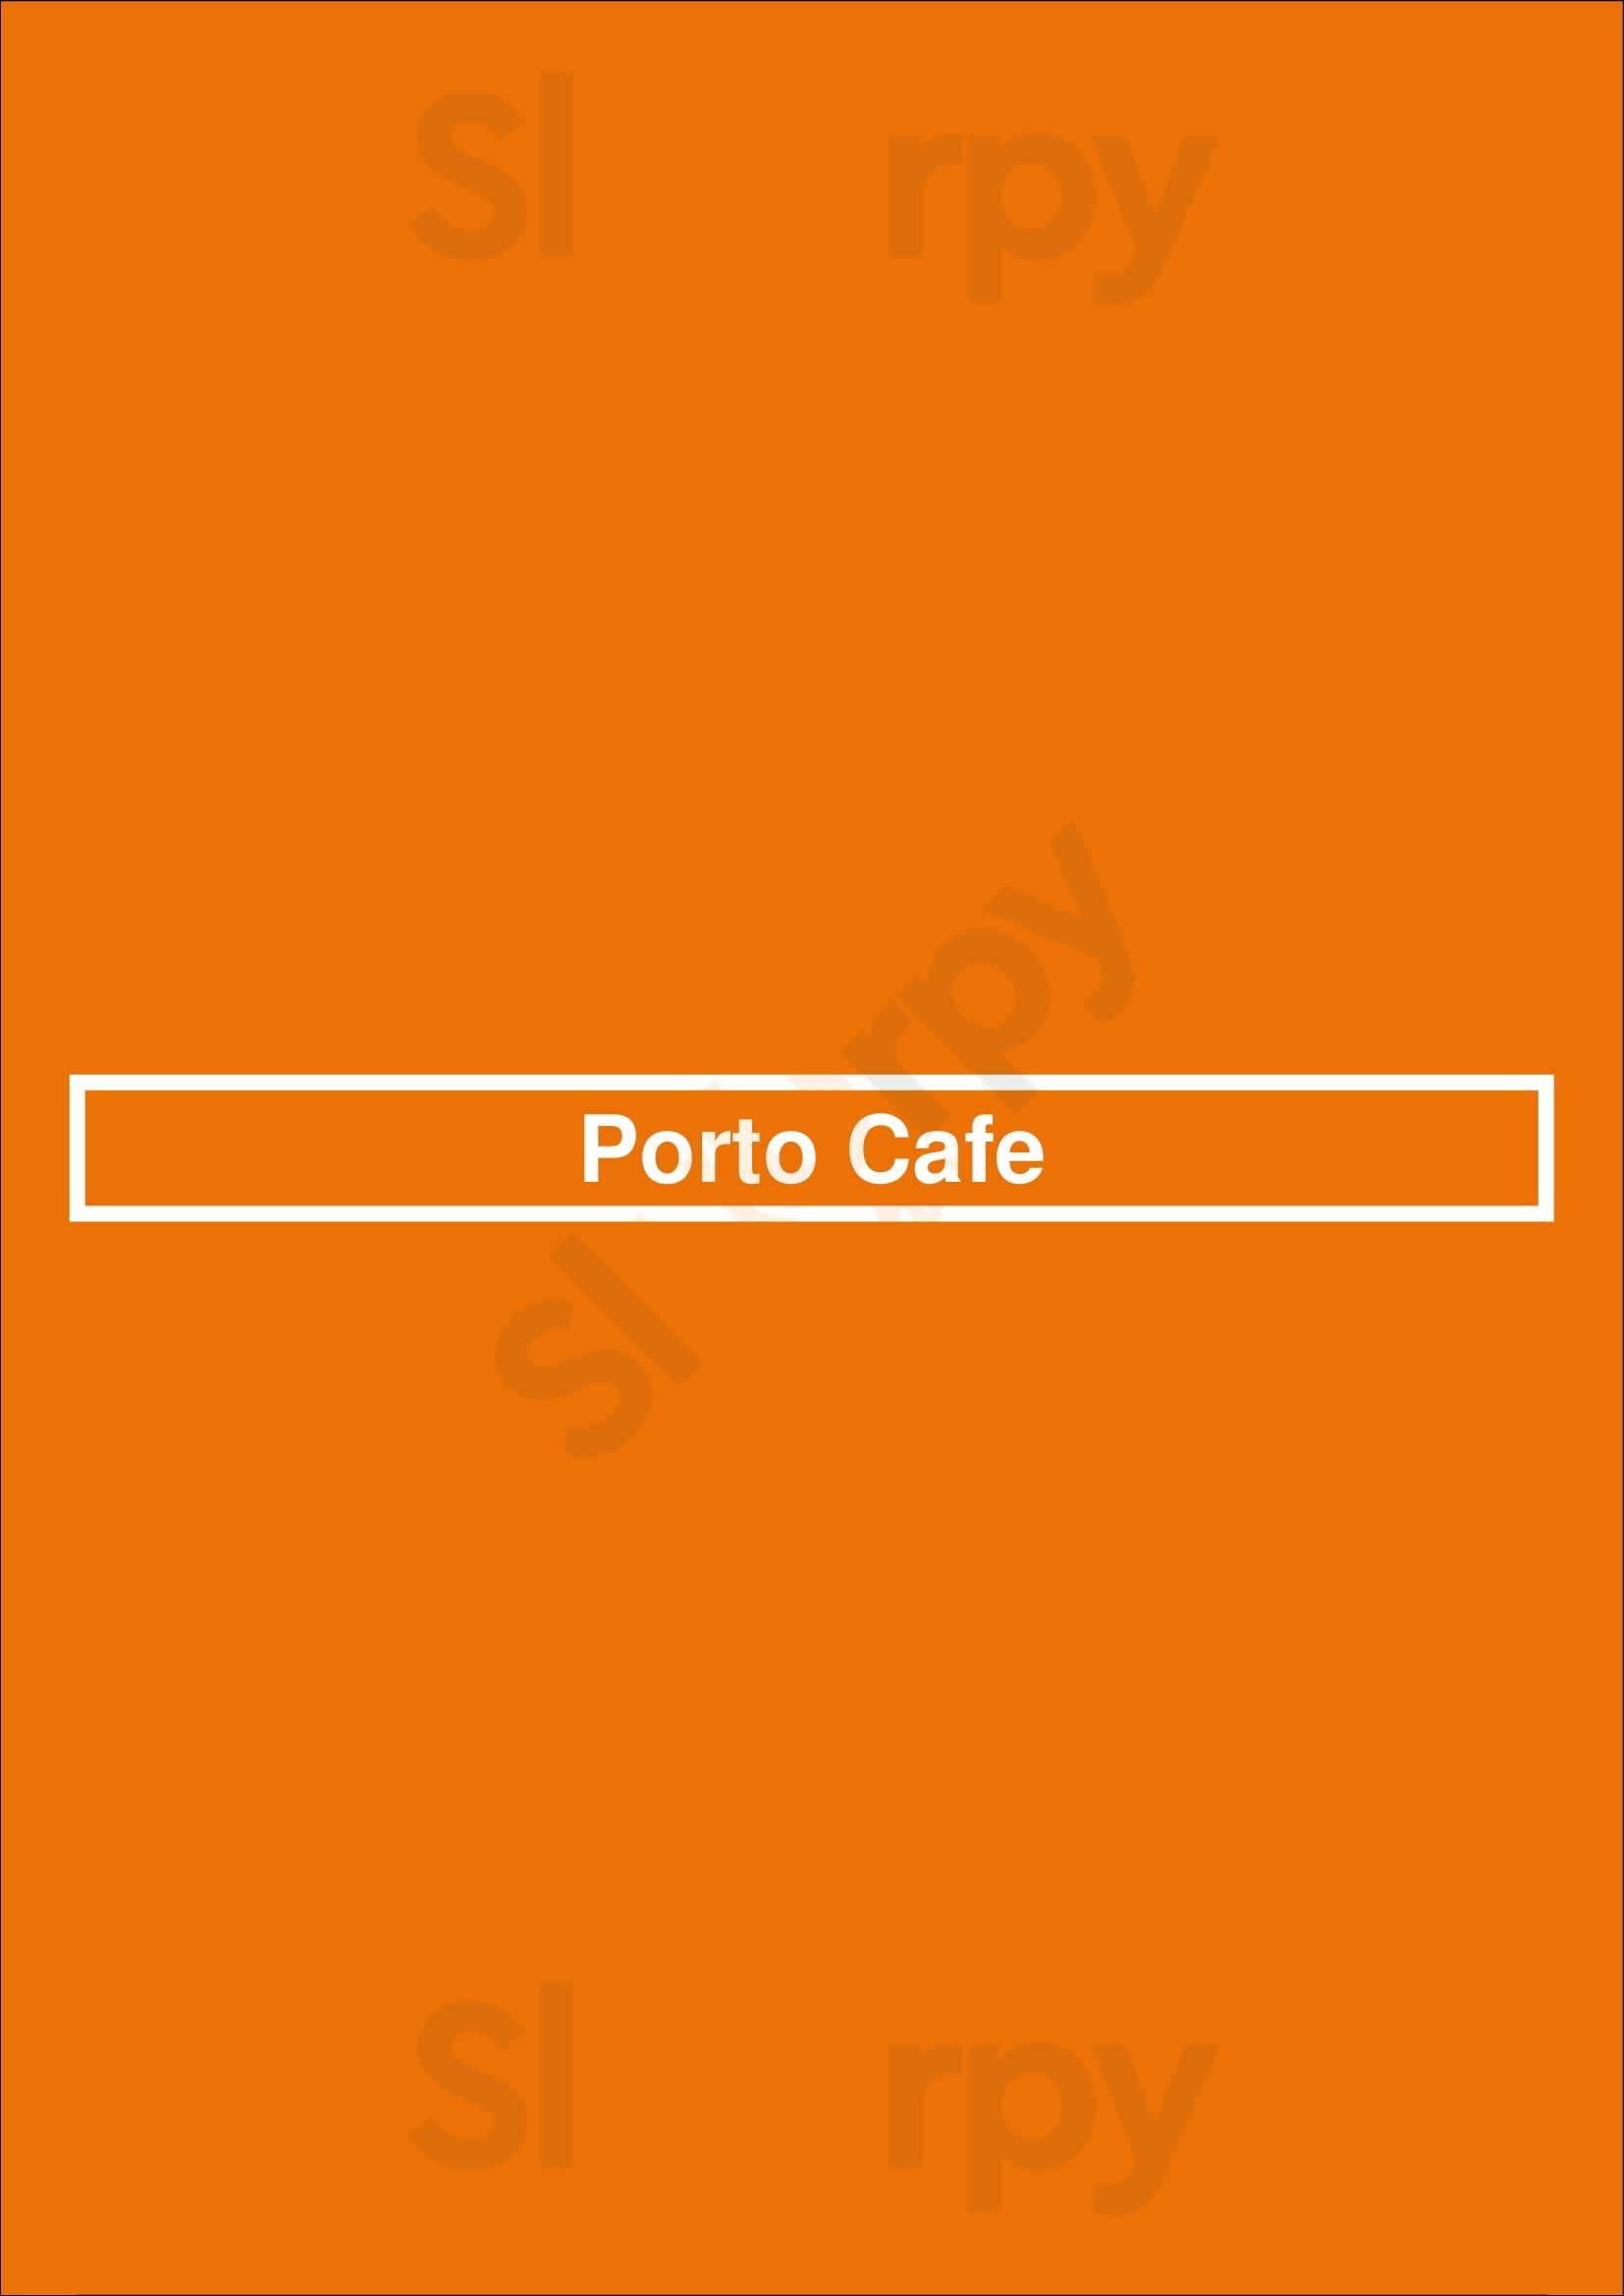 Porto Cafe Vancouver Menu - 1